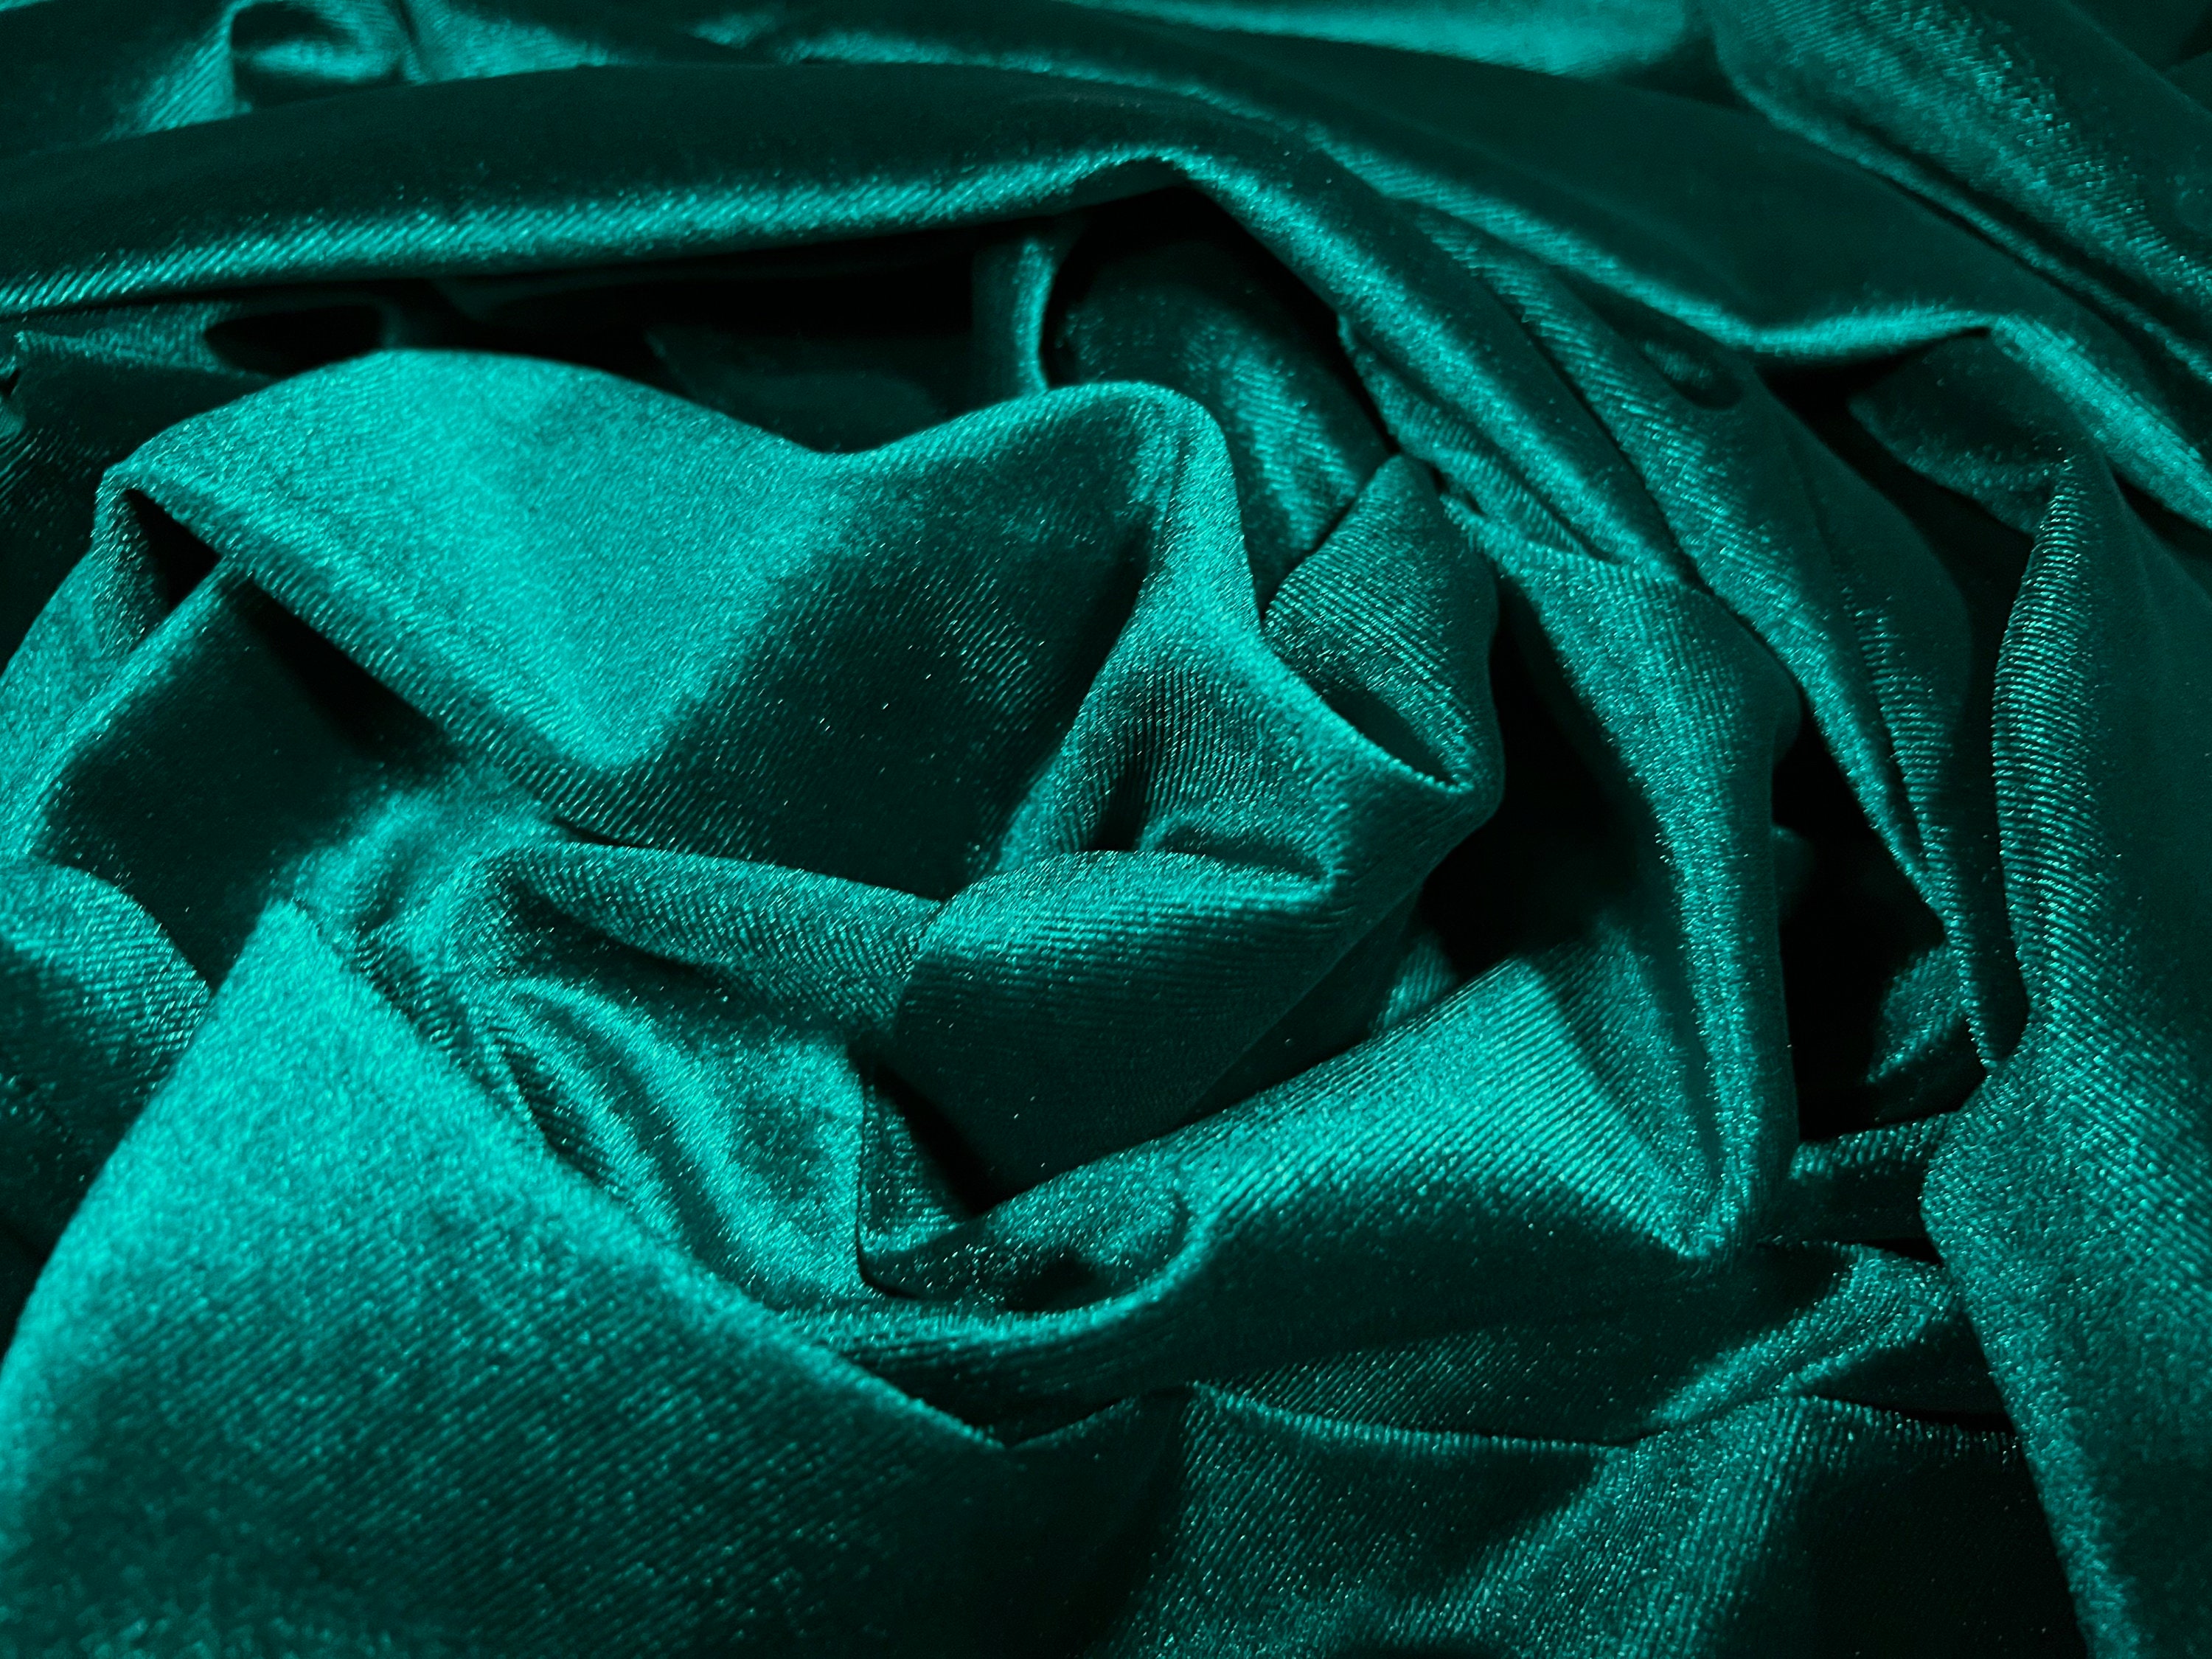 Emerald Green Damask Embossed Velvet Upholstery Drapery Fabric